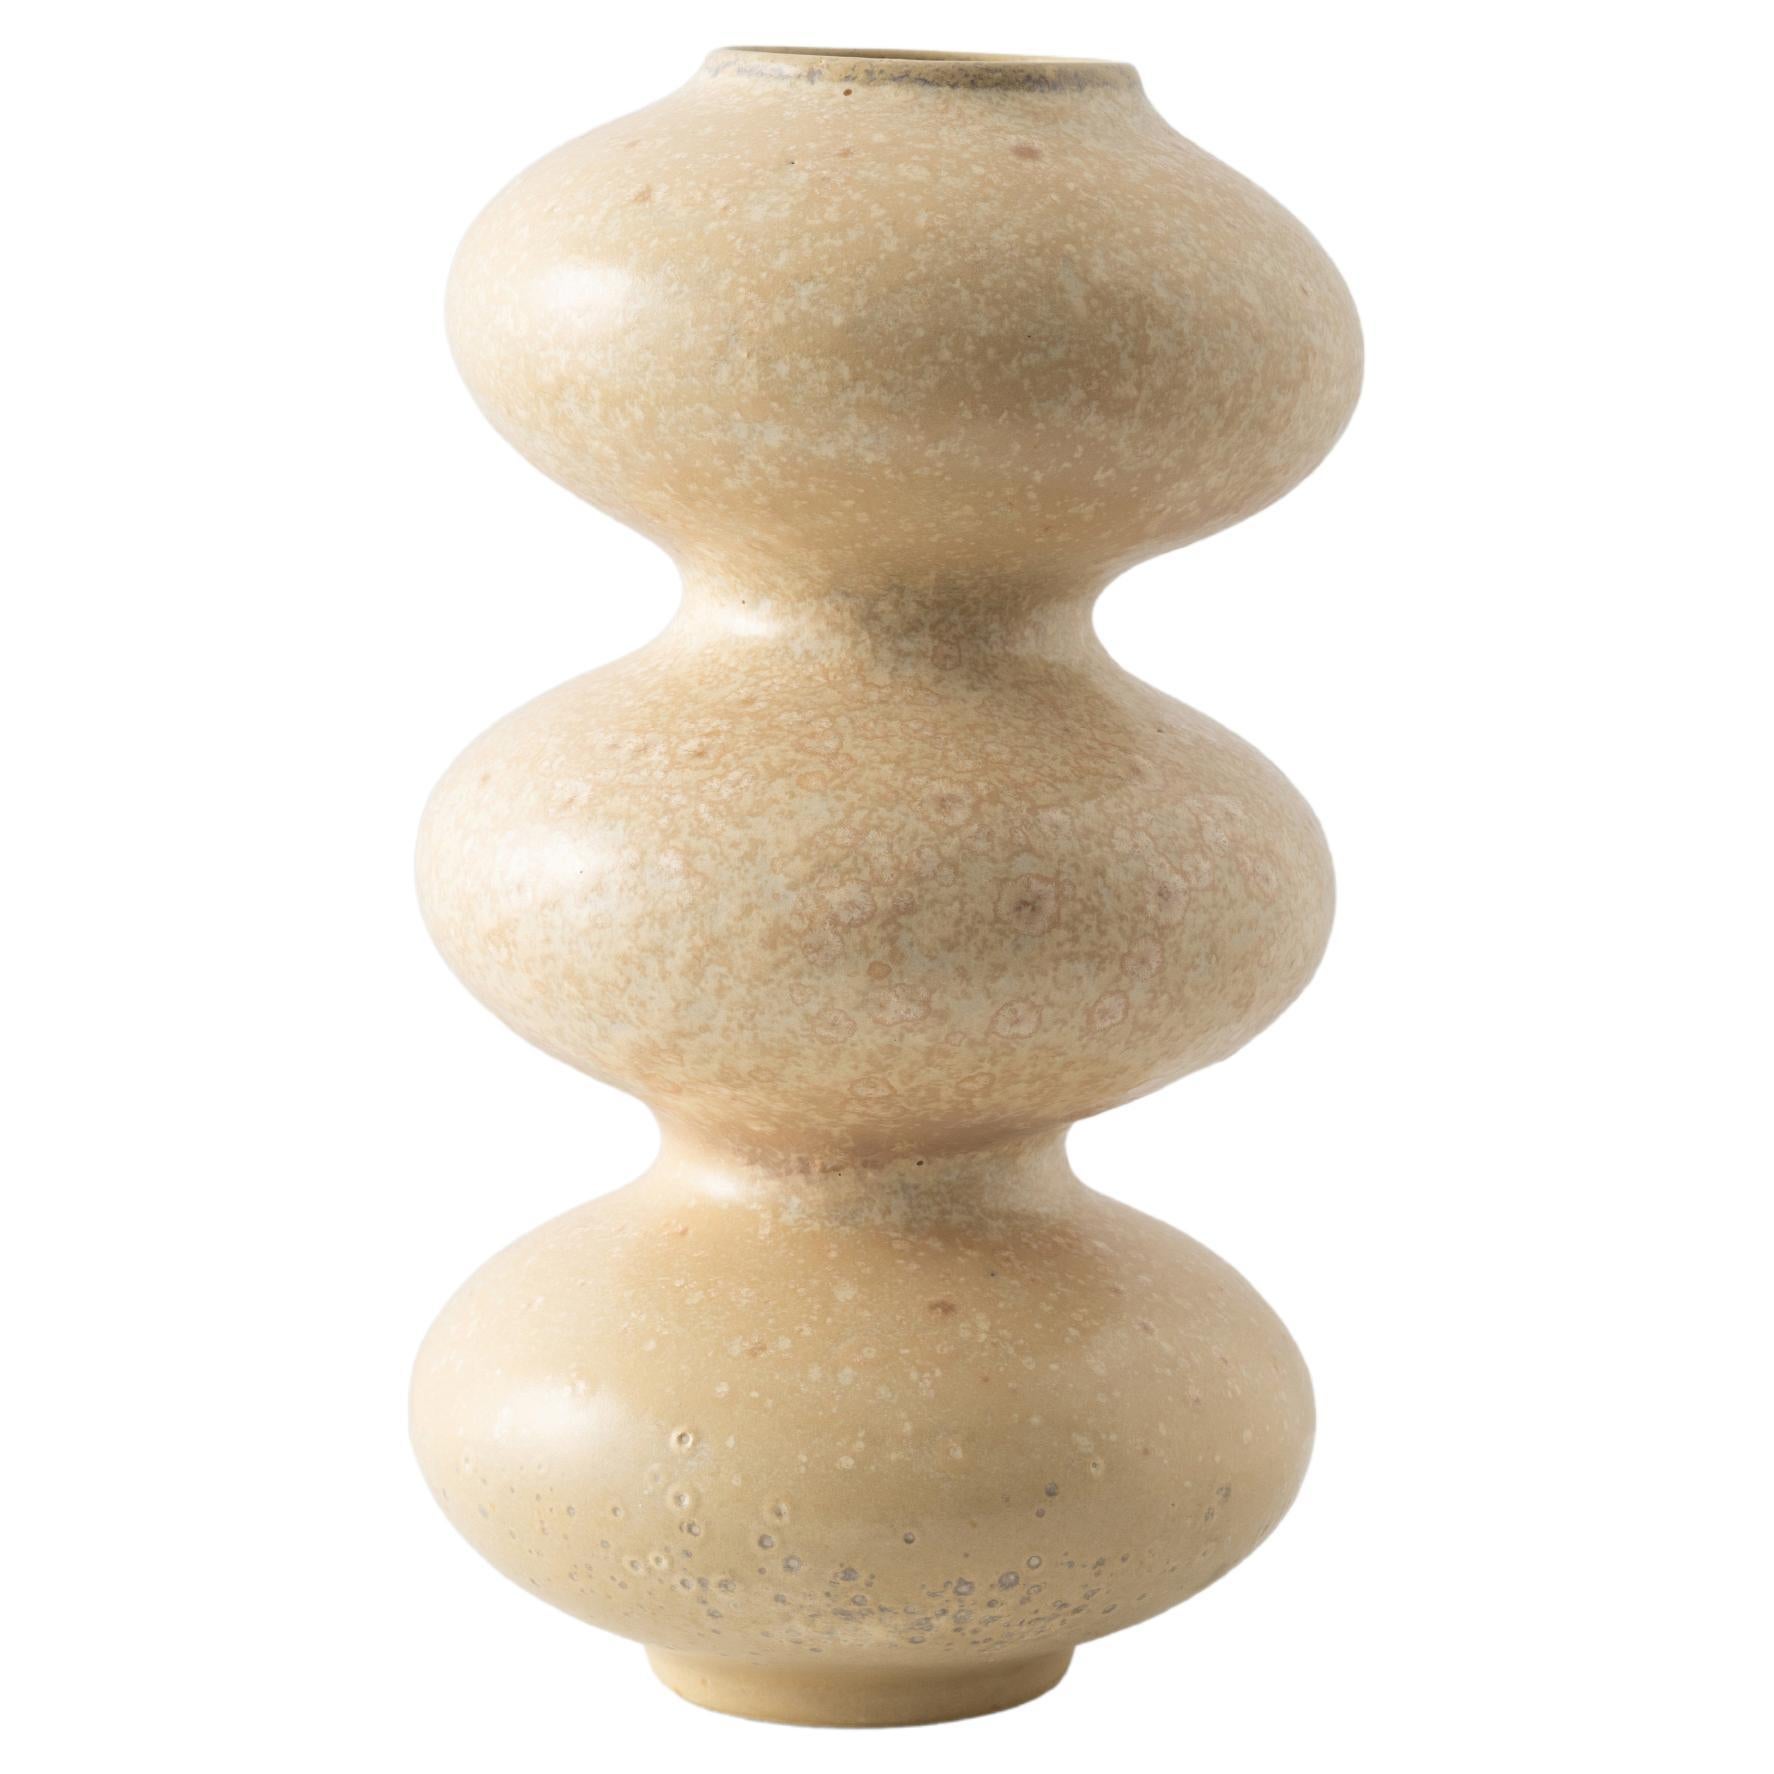 Crystal Cream Wave Form Vase by Forma Rosa Studio